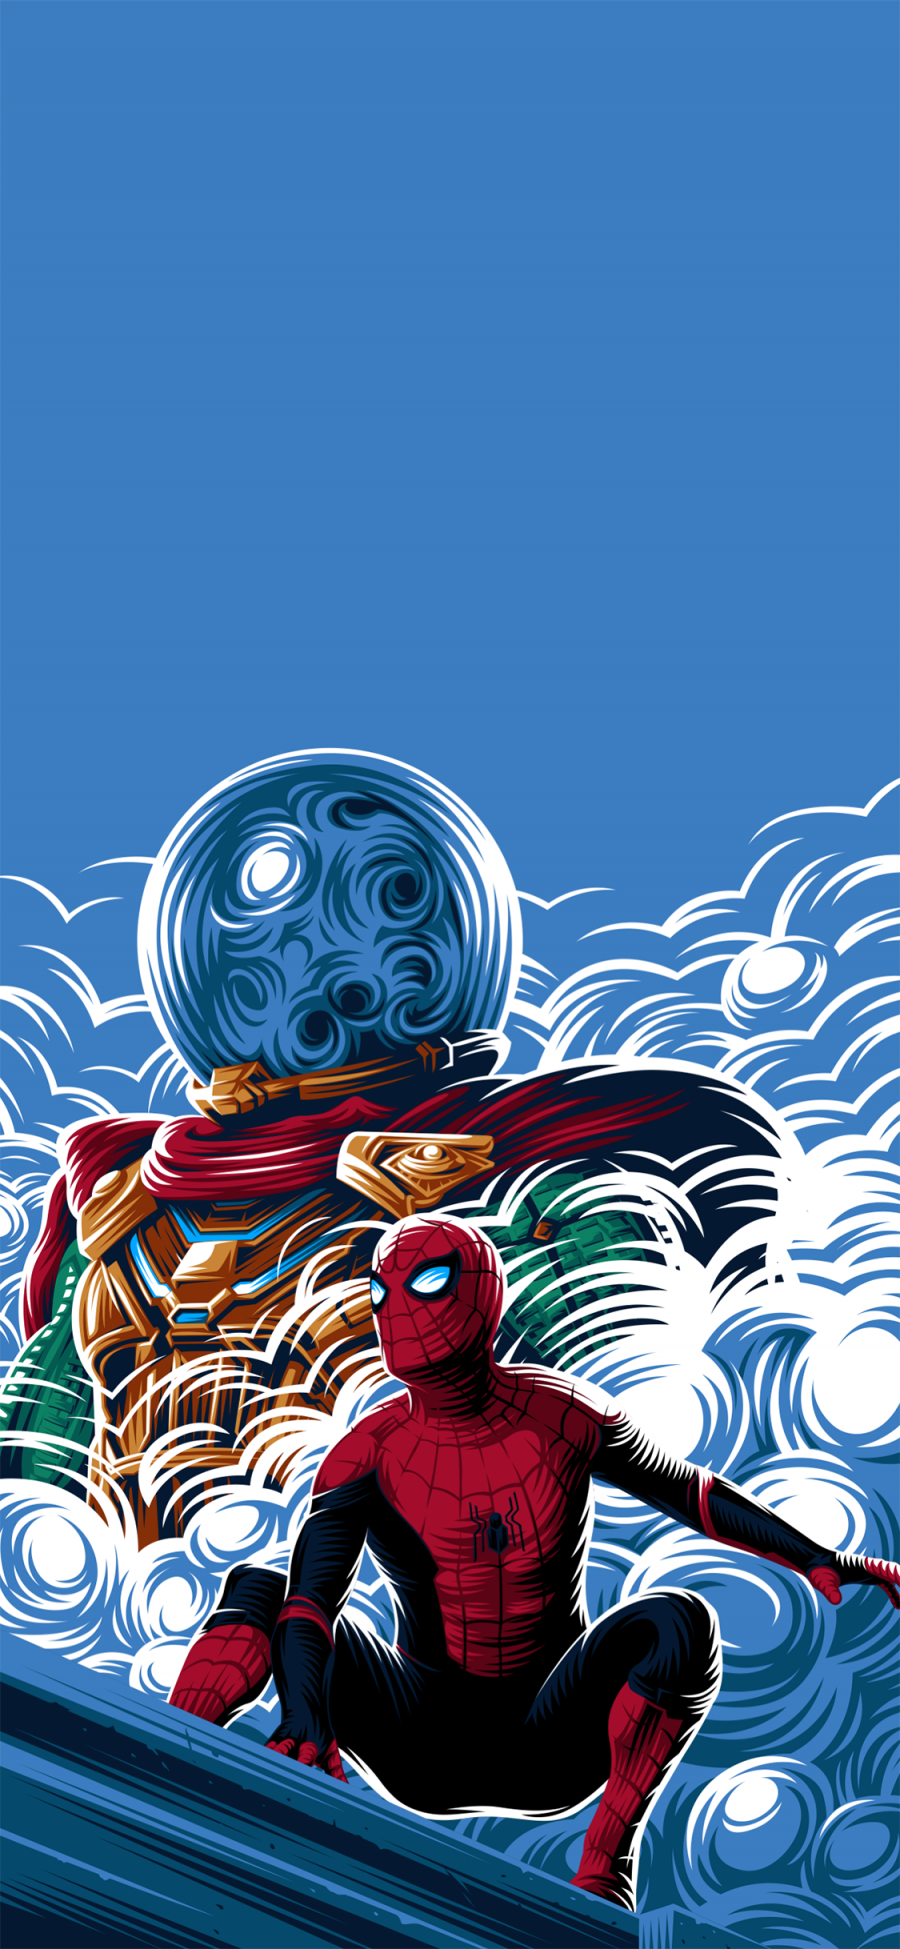 [2436×1125]蜘蛛侠 英雄远征 漫威 超级英雄 欧美 苹果手机动漫壁纸图片